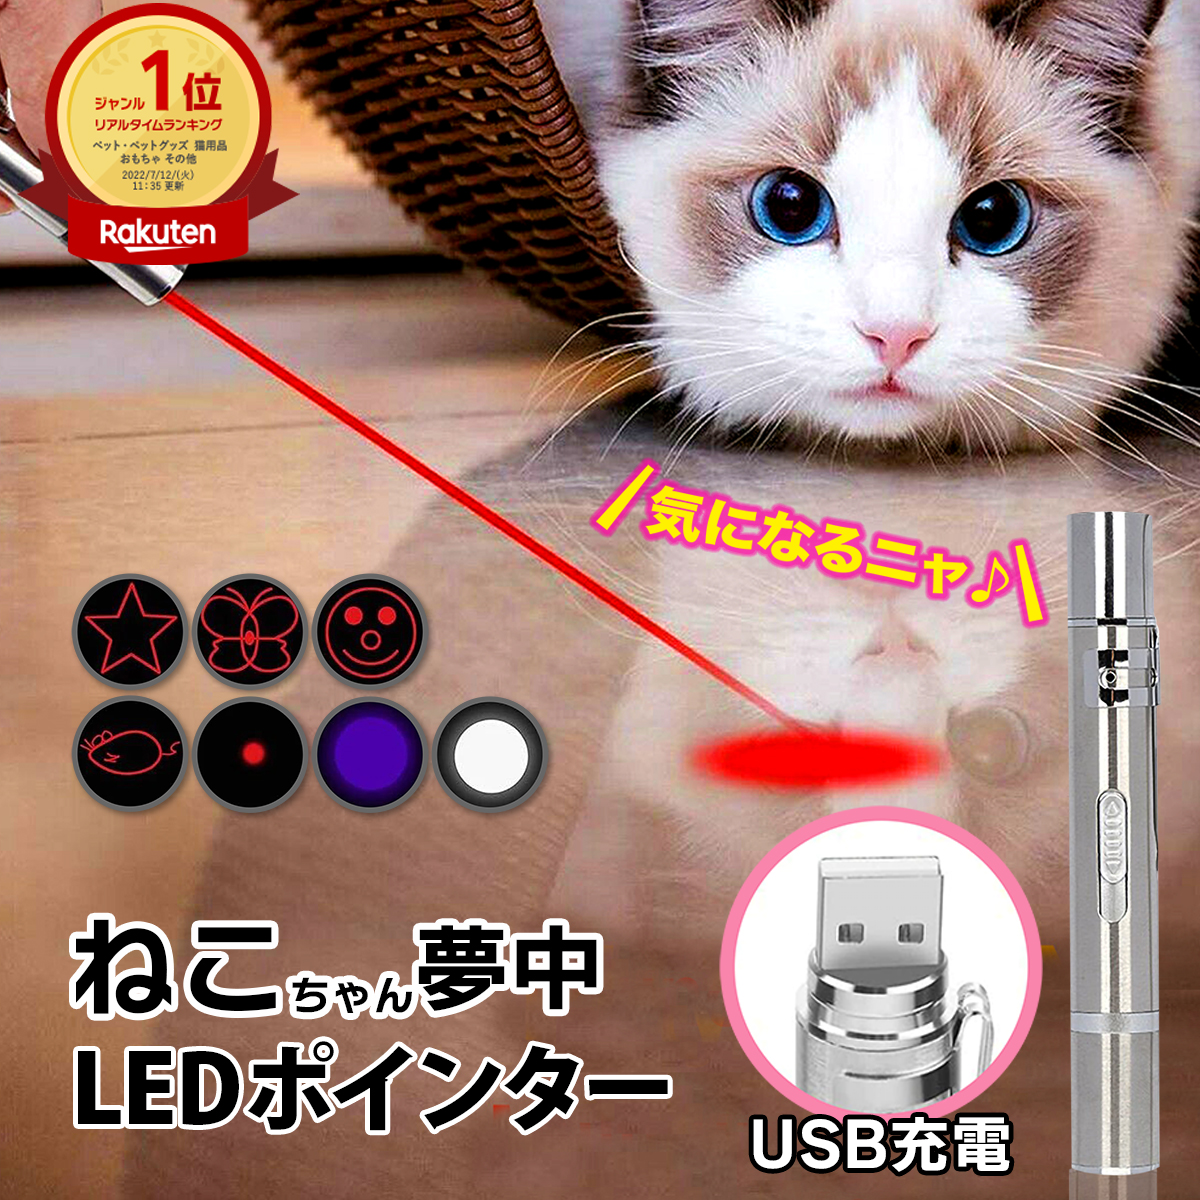 最上の品質な LED ポインター 猫じゃらし USB充電式 猫 玩具 懐中電灯 UVライト